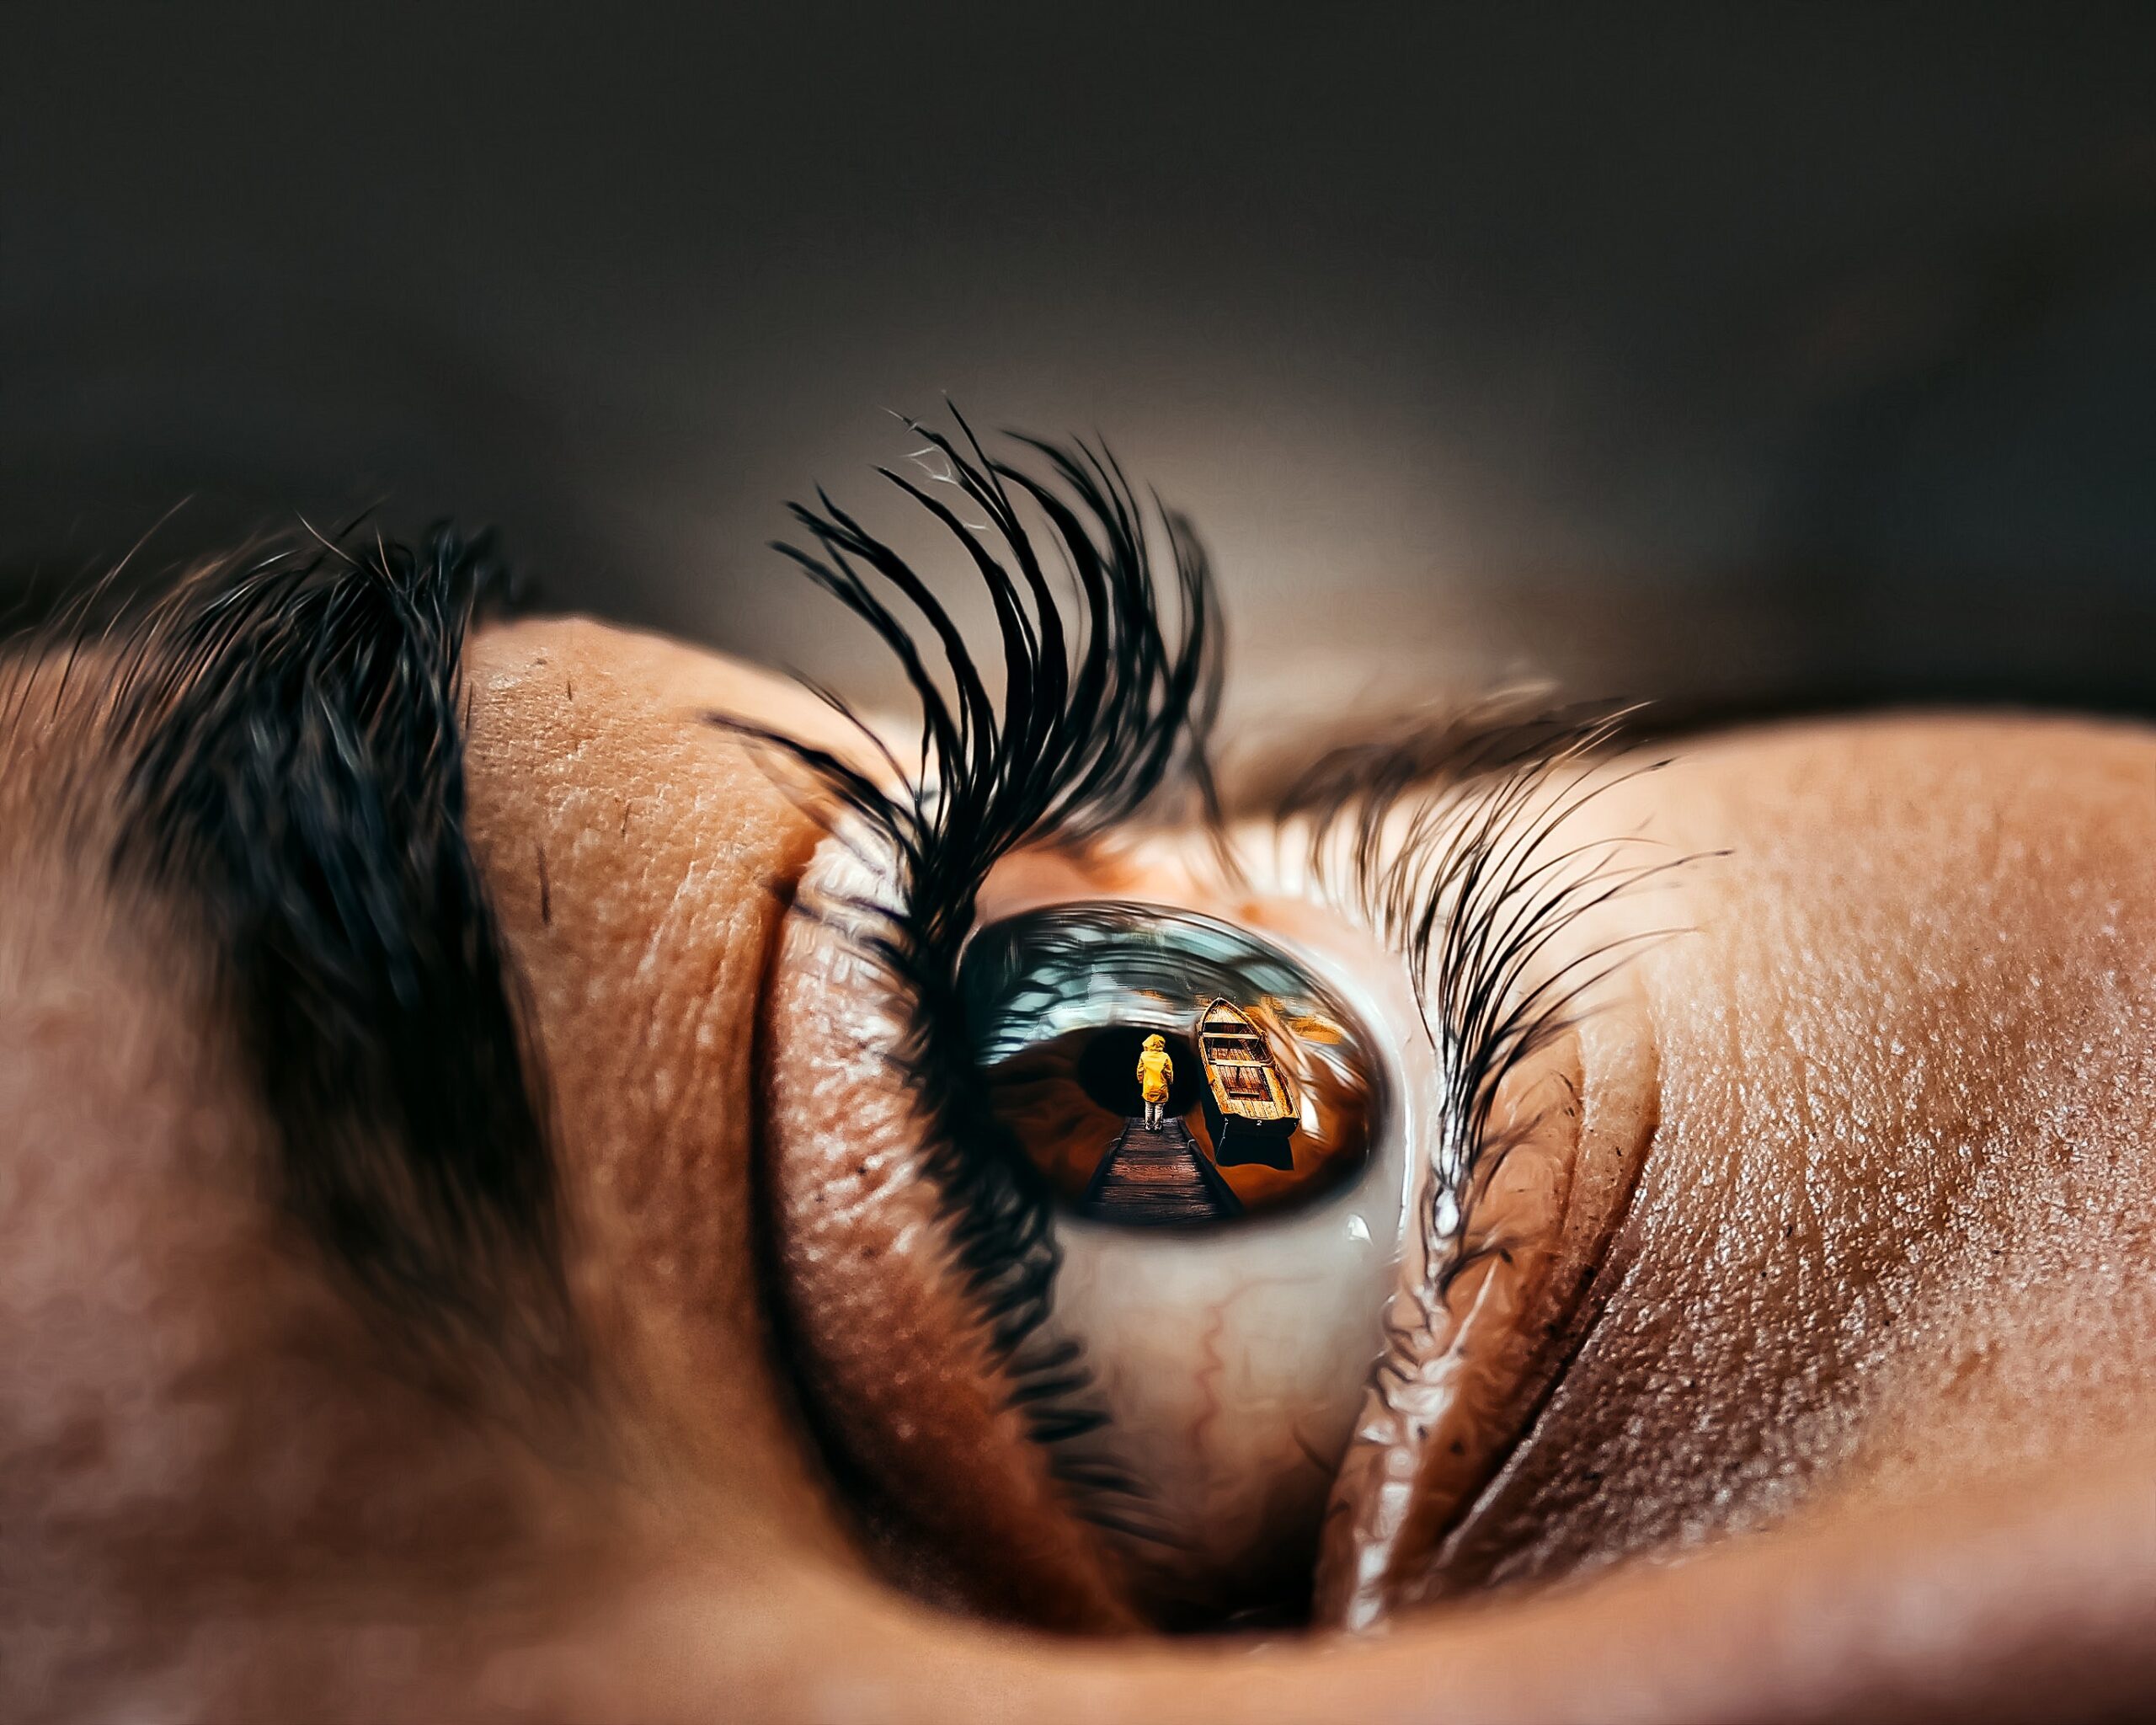 artritis može utjecati na vaše oči